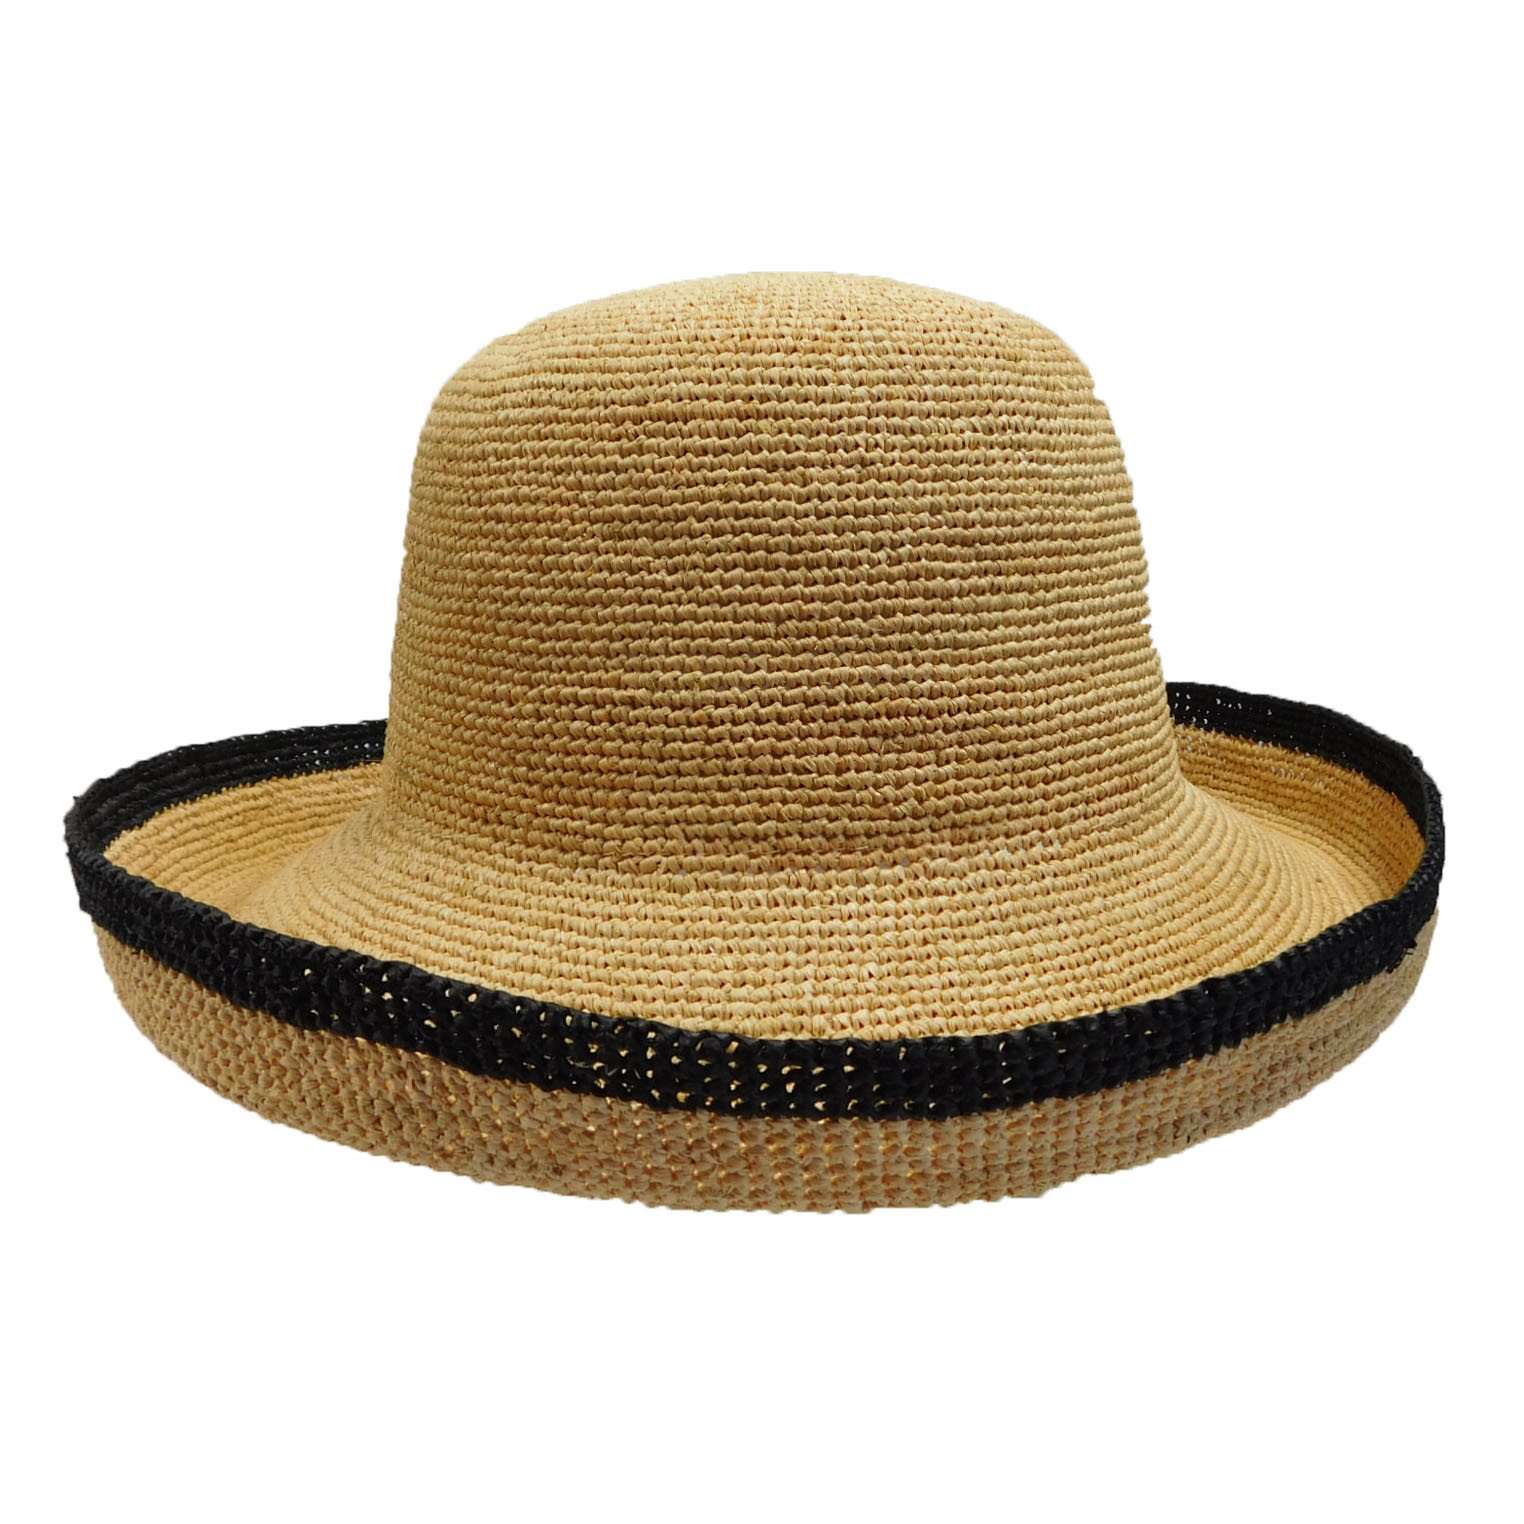 Hand Crocheted Turned Up Brim Hat - Natural, Kettle Brim Hat - SetarTrading Hats 